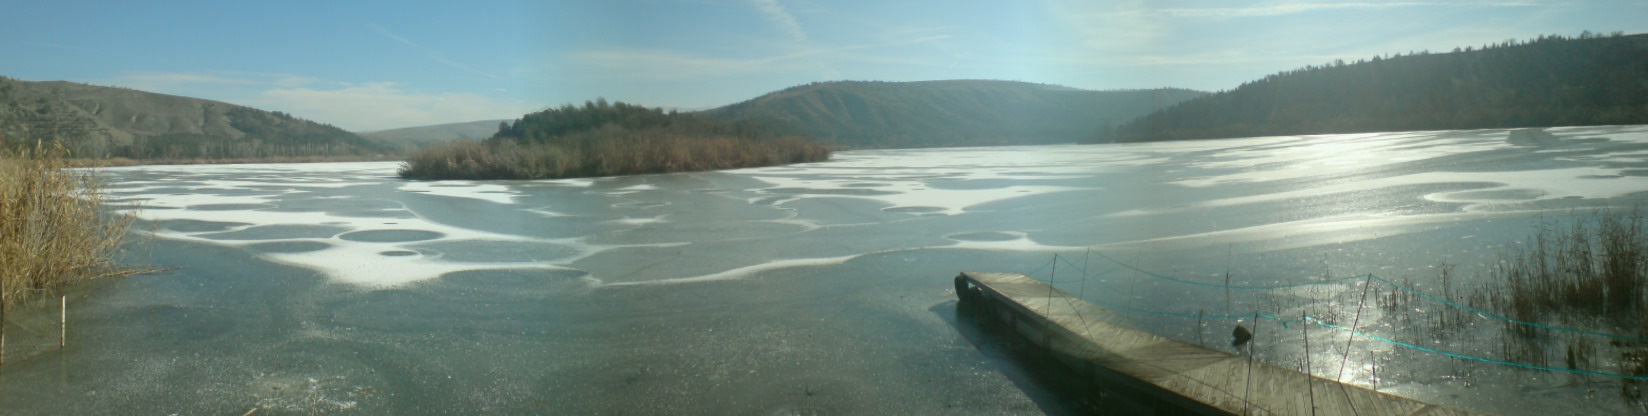 Eymir gölü 2.2.2007